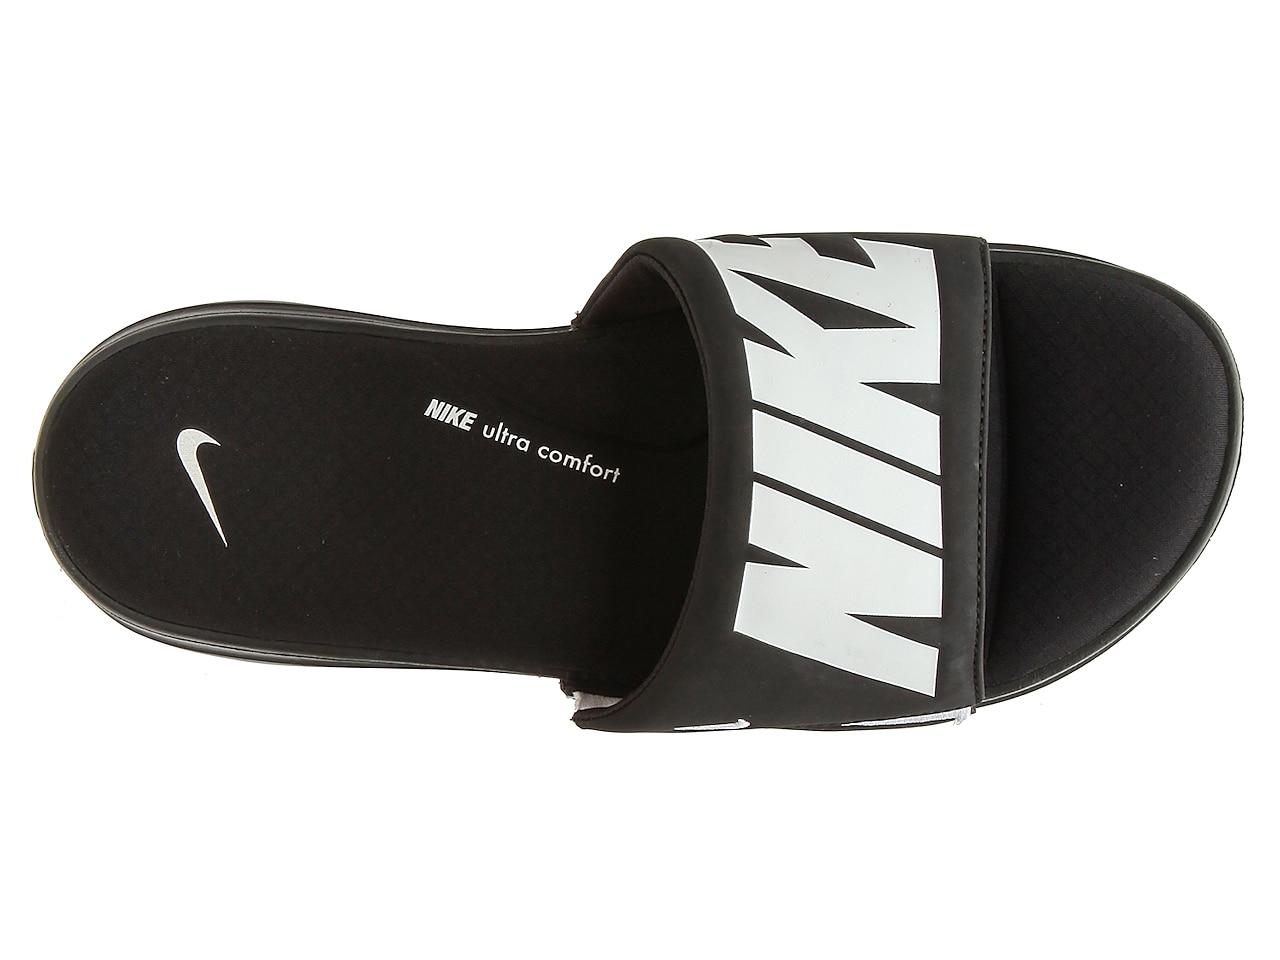 Nike Ultra Comfort 3 Slide Sandal in Black for Men